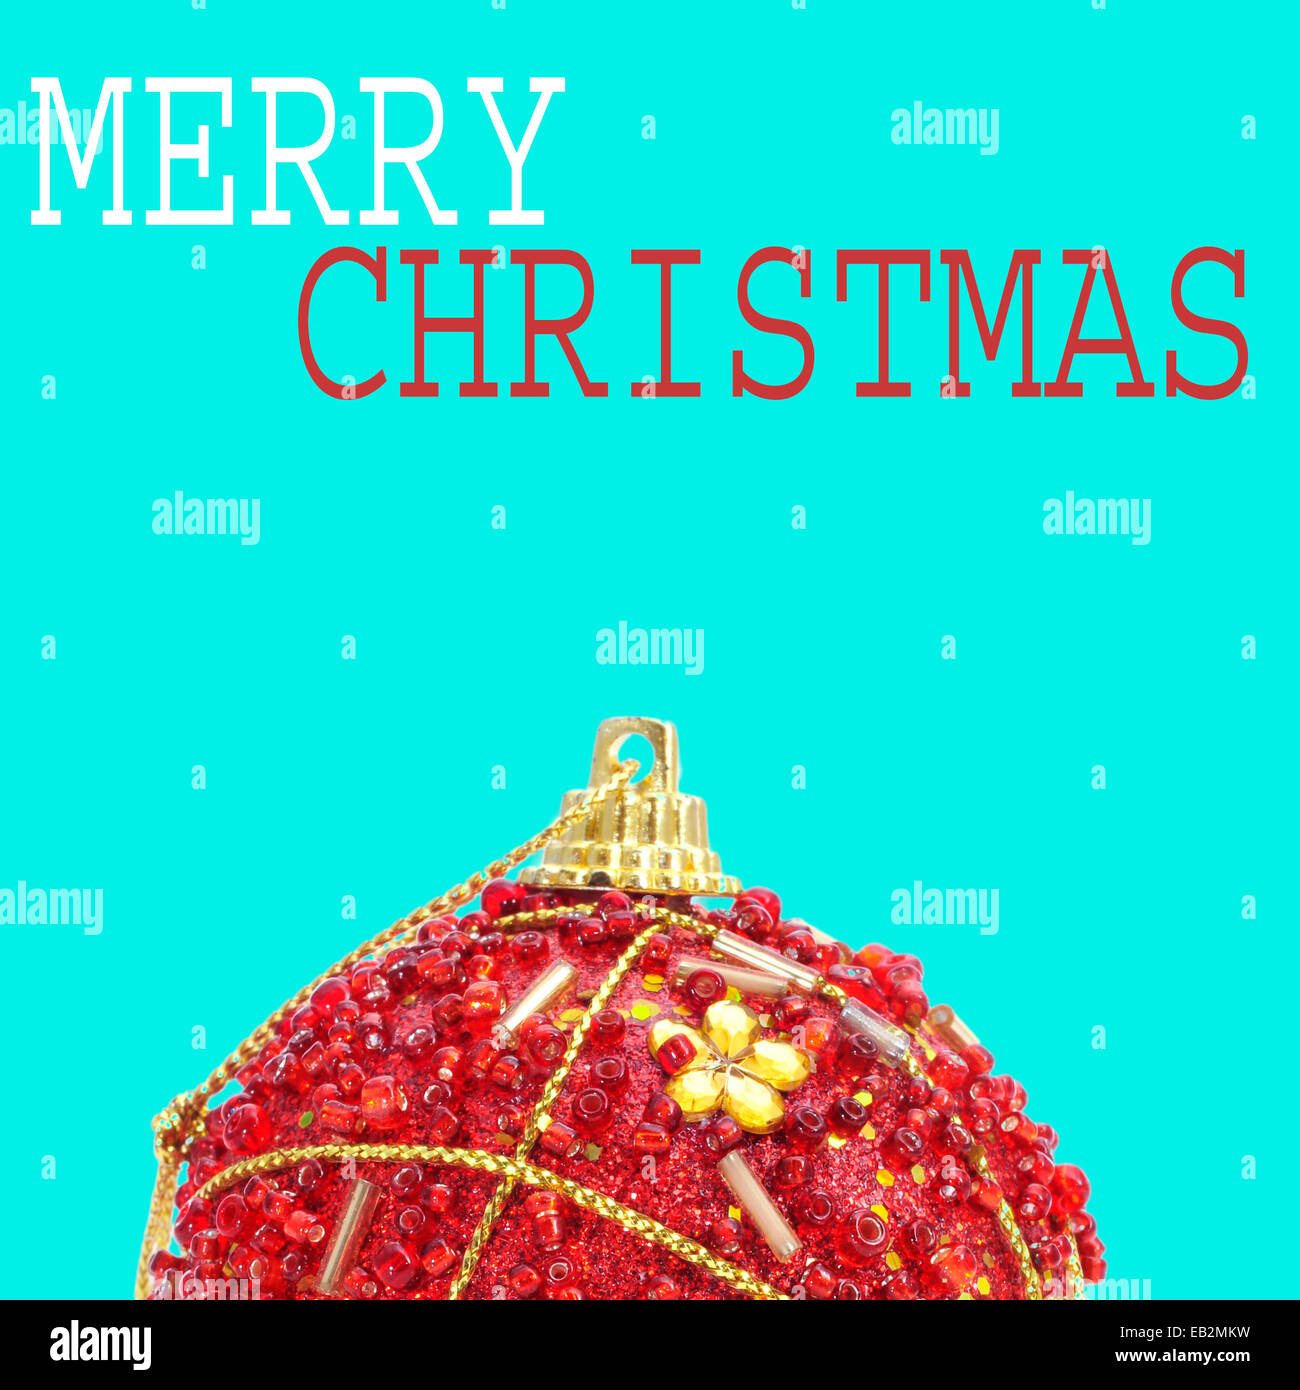 Una bola de Navidad roja ornamentada y la frase feliz navidad sobre un fondo azul con un estilo pop art Foto de stock